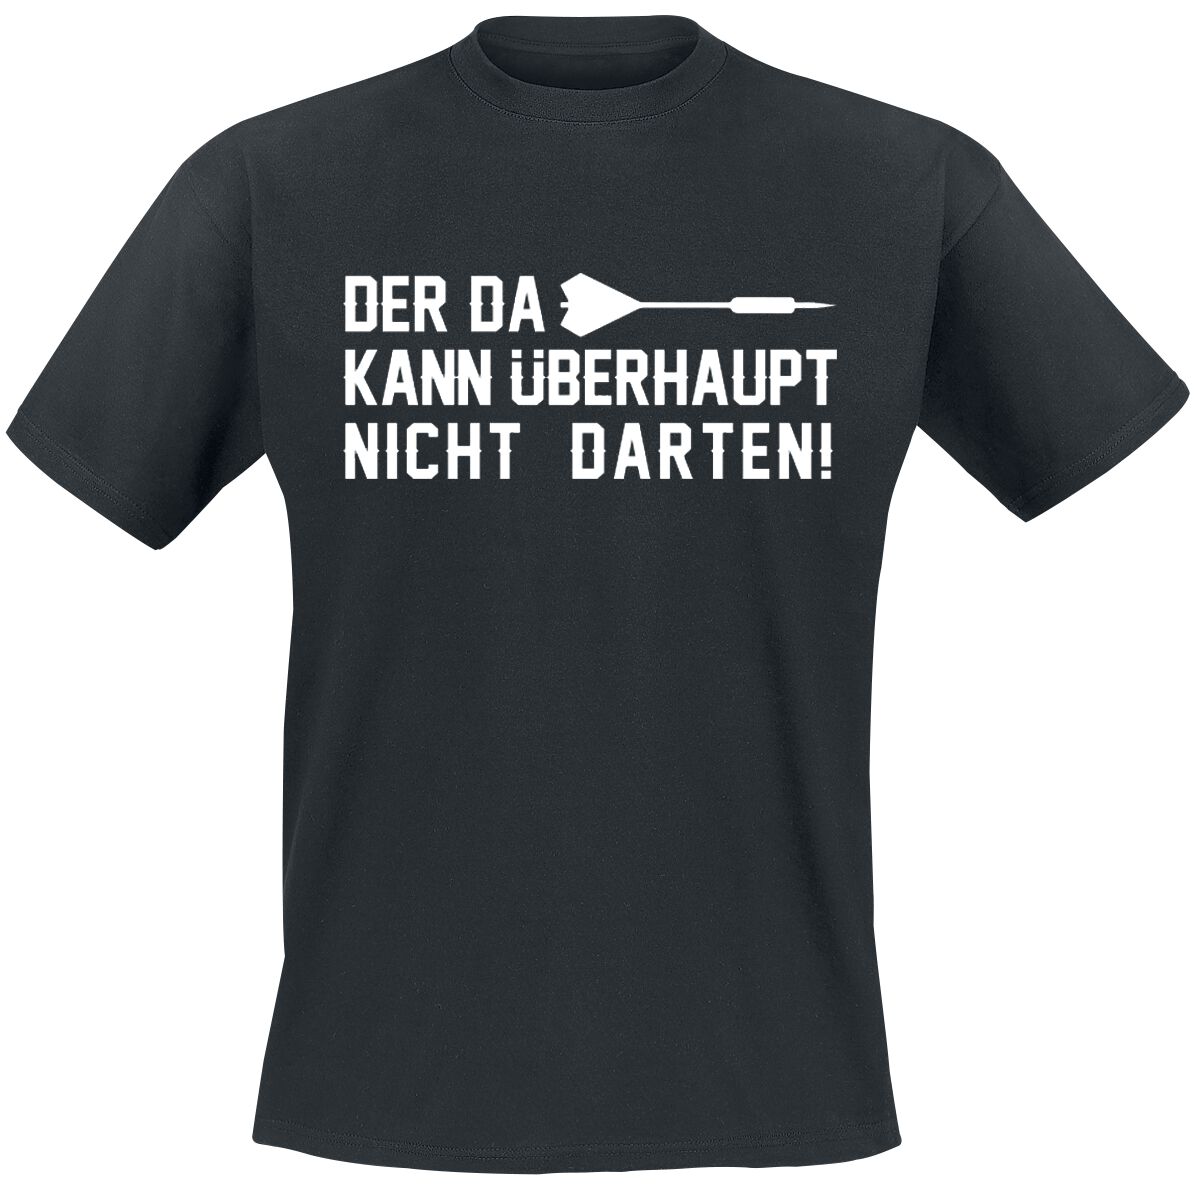 Darts T-Shirt - Der da kann überhaupt nicht darten! - M bis 3XL - für Männer - Größe 3XL - schwarz